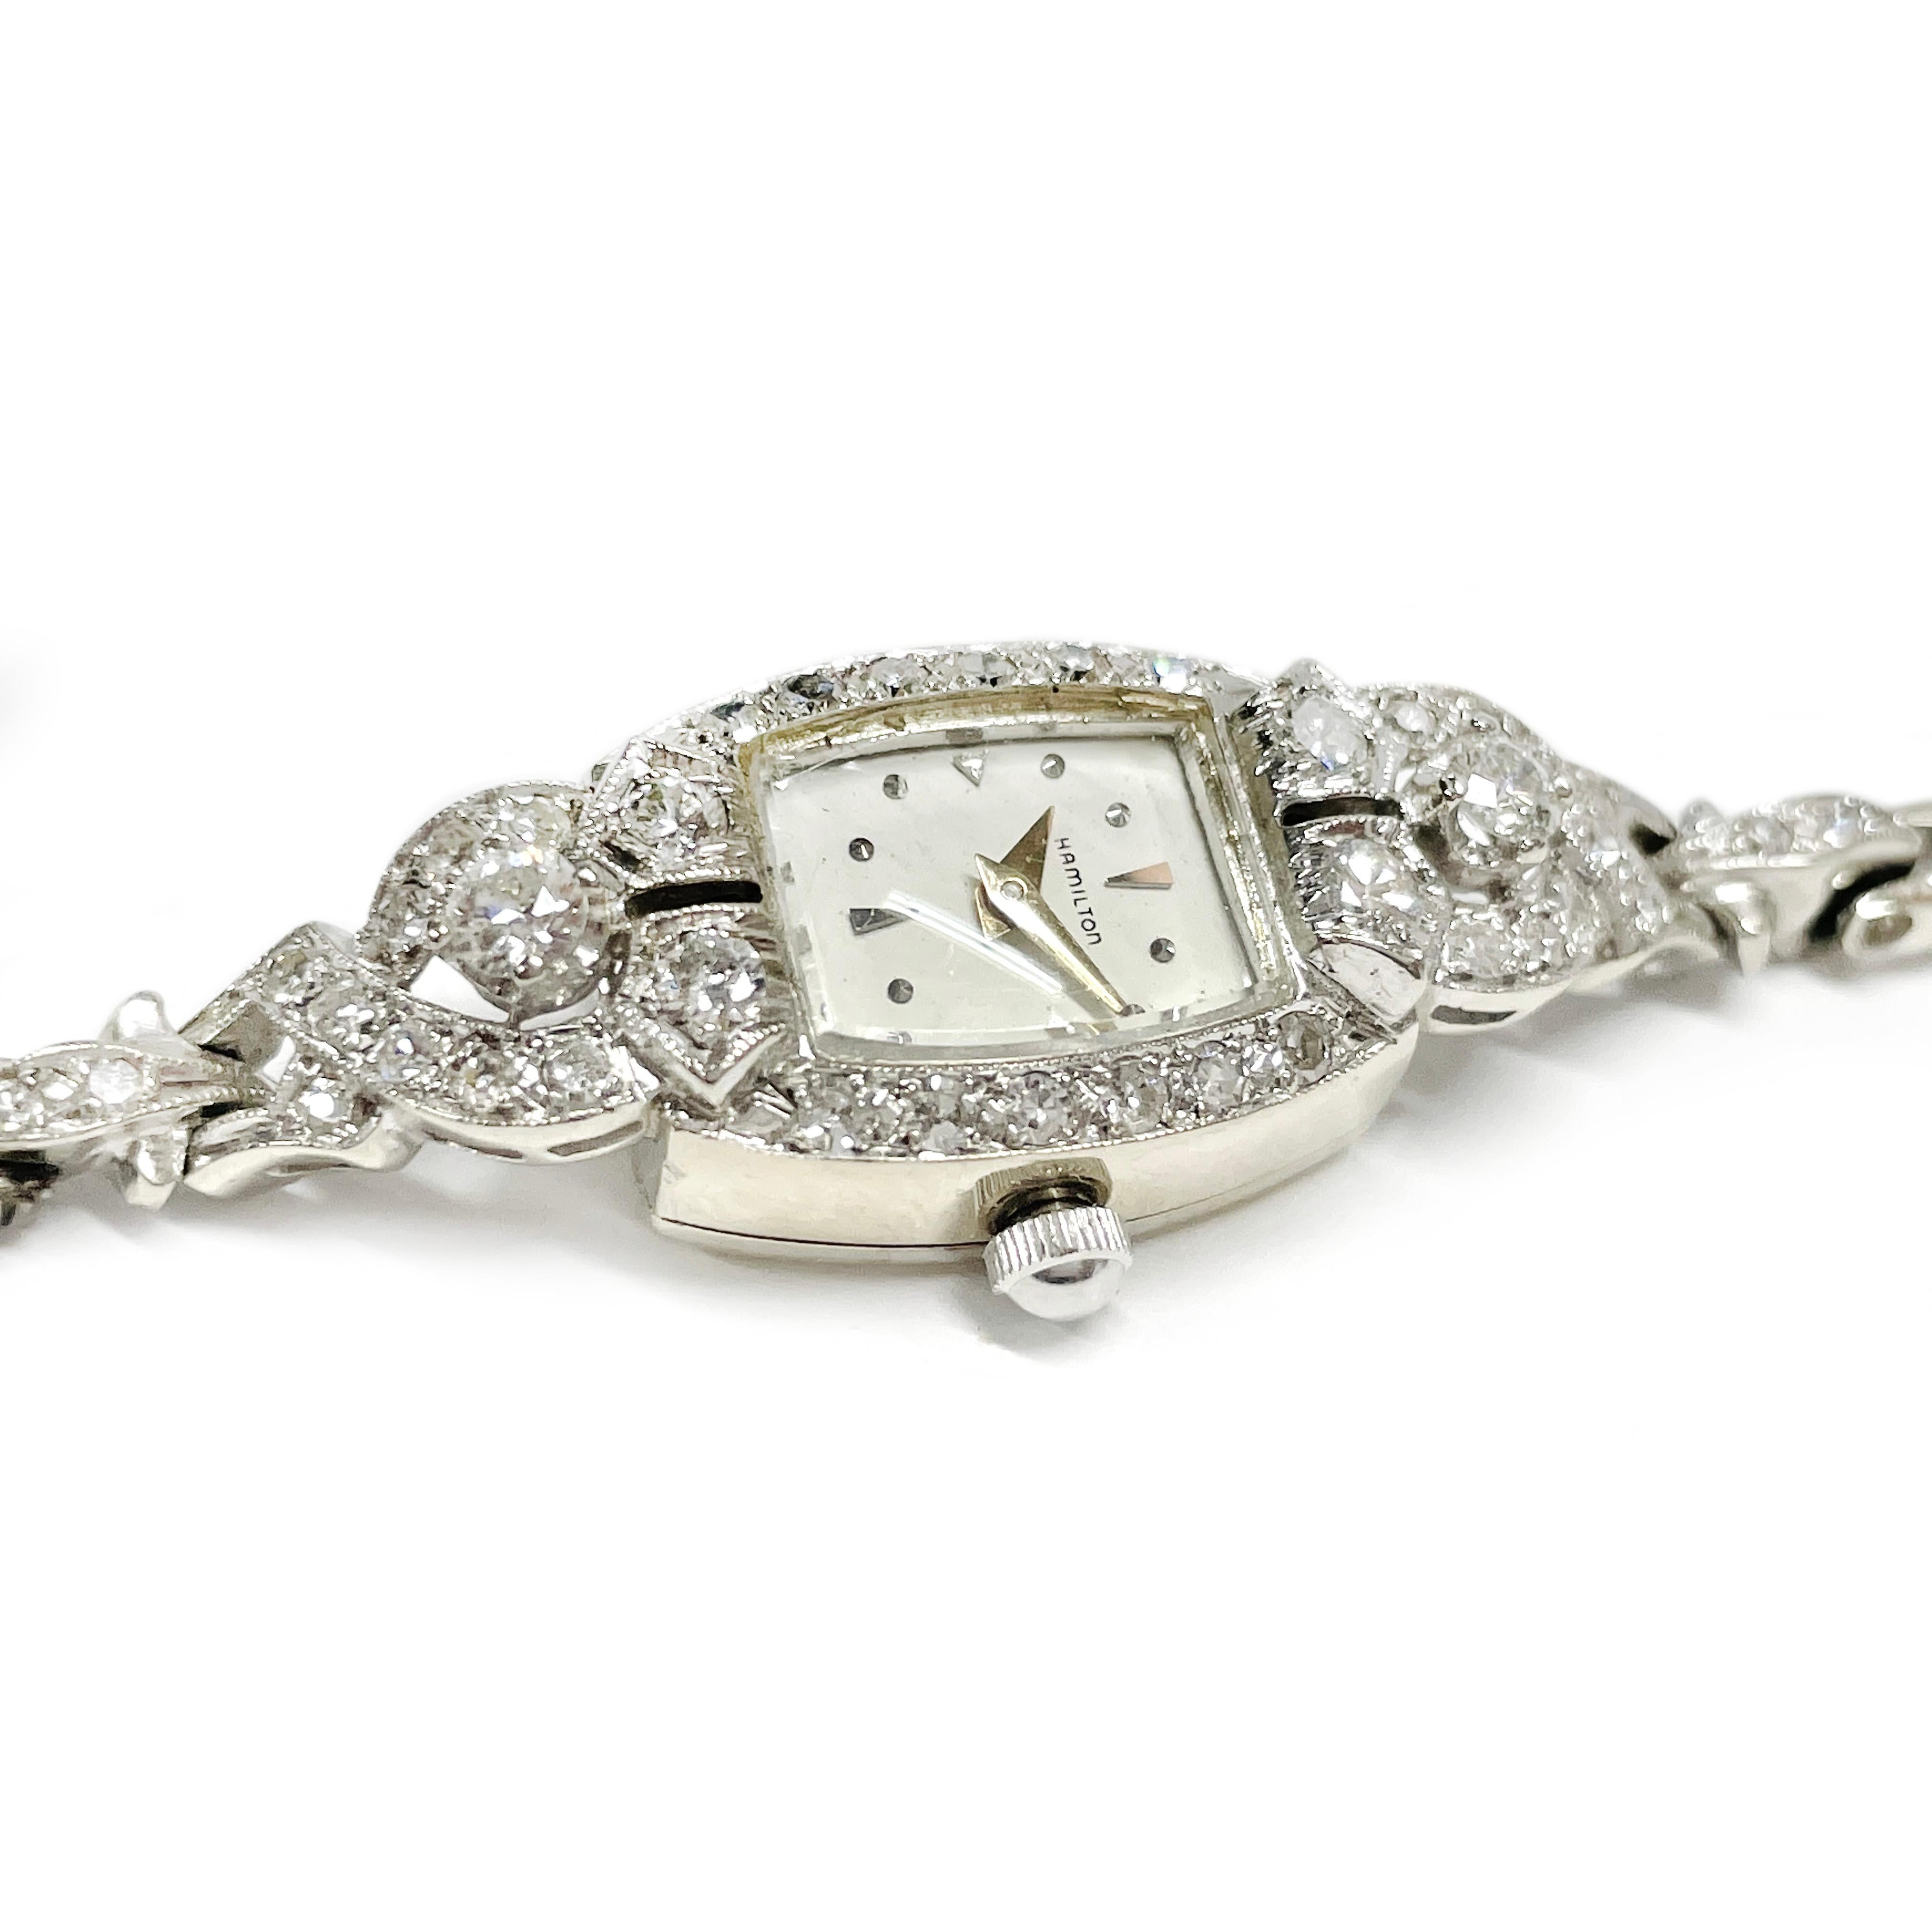 Vintage Art Deco Hamilton Ladies White Gold Diamond Bracelet Watch. Das abgerundete, rechteckige Zifferblatt ist mit runden Diamanten umrahmt und mit Stunden- und Minutenzeigern aus Gelbgold versehen. Diese schöne Damenuhr funkelt mit insgesamt